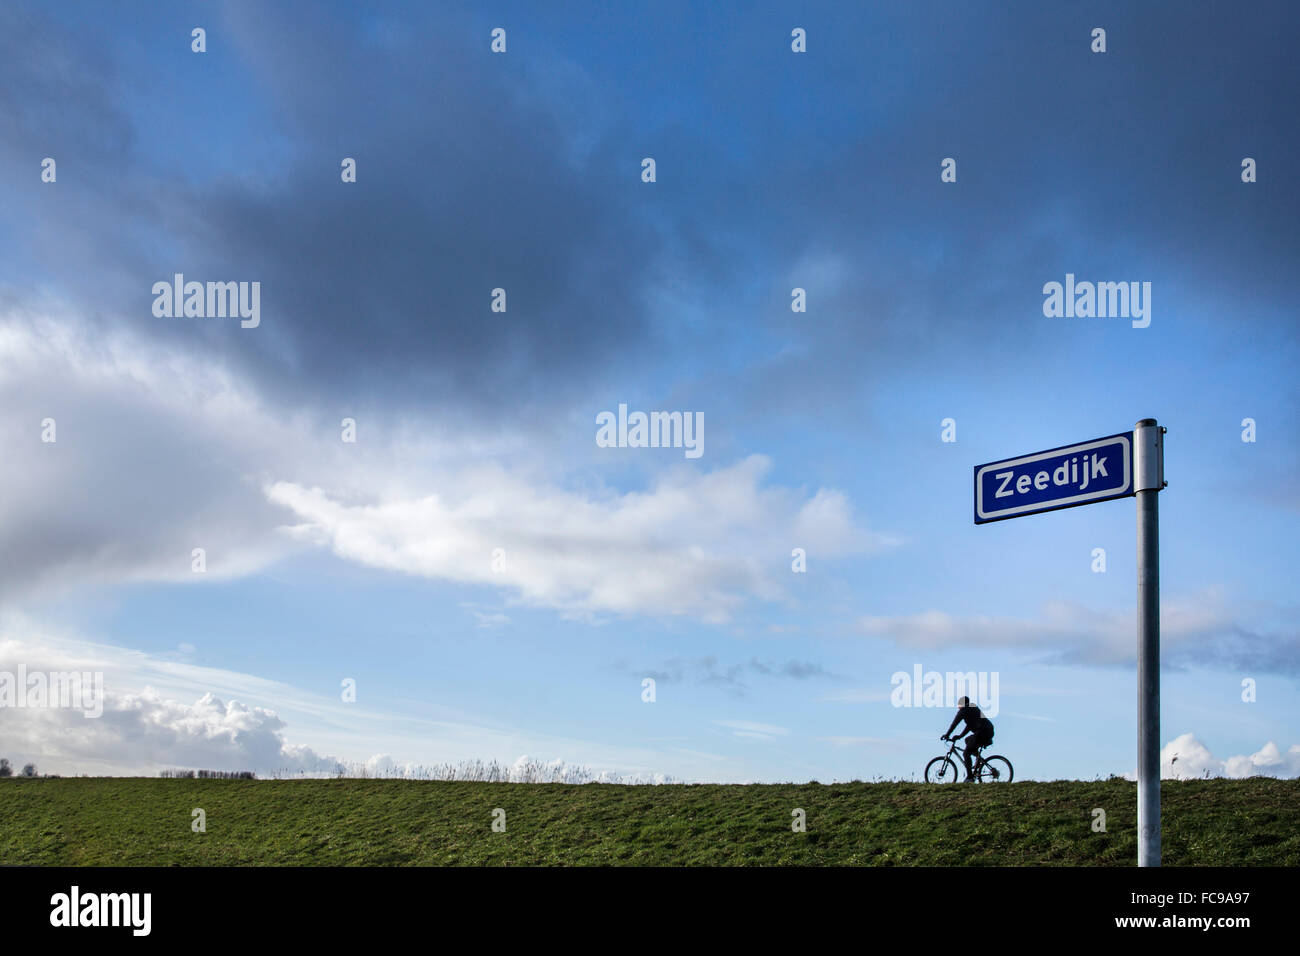 Niederlande, Putten, Arkemheen Polder, Straßenschild mit Namen Landstraße: Deich auf Niederländisch: Zeedijk. Radfahrer am Deich Stockfoto